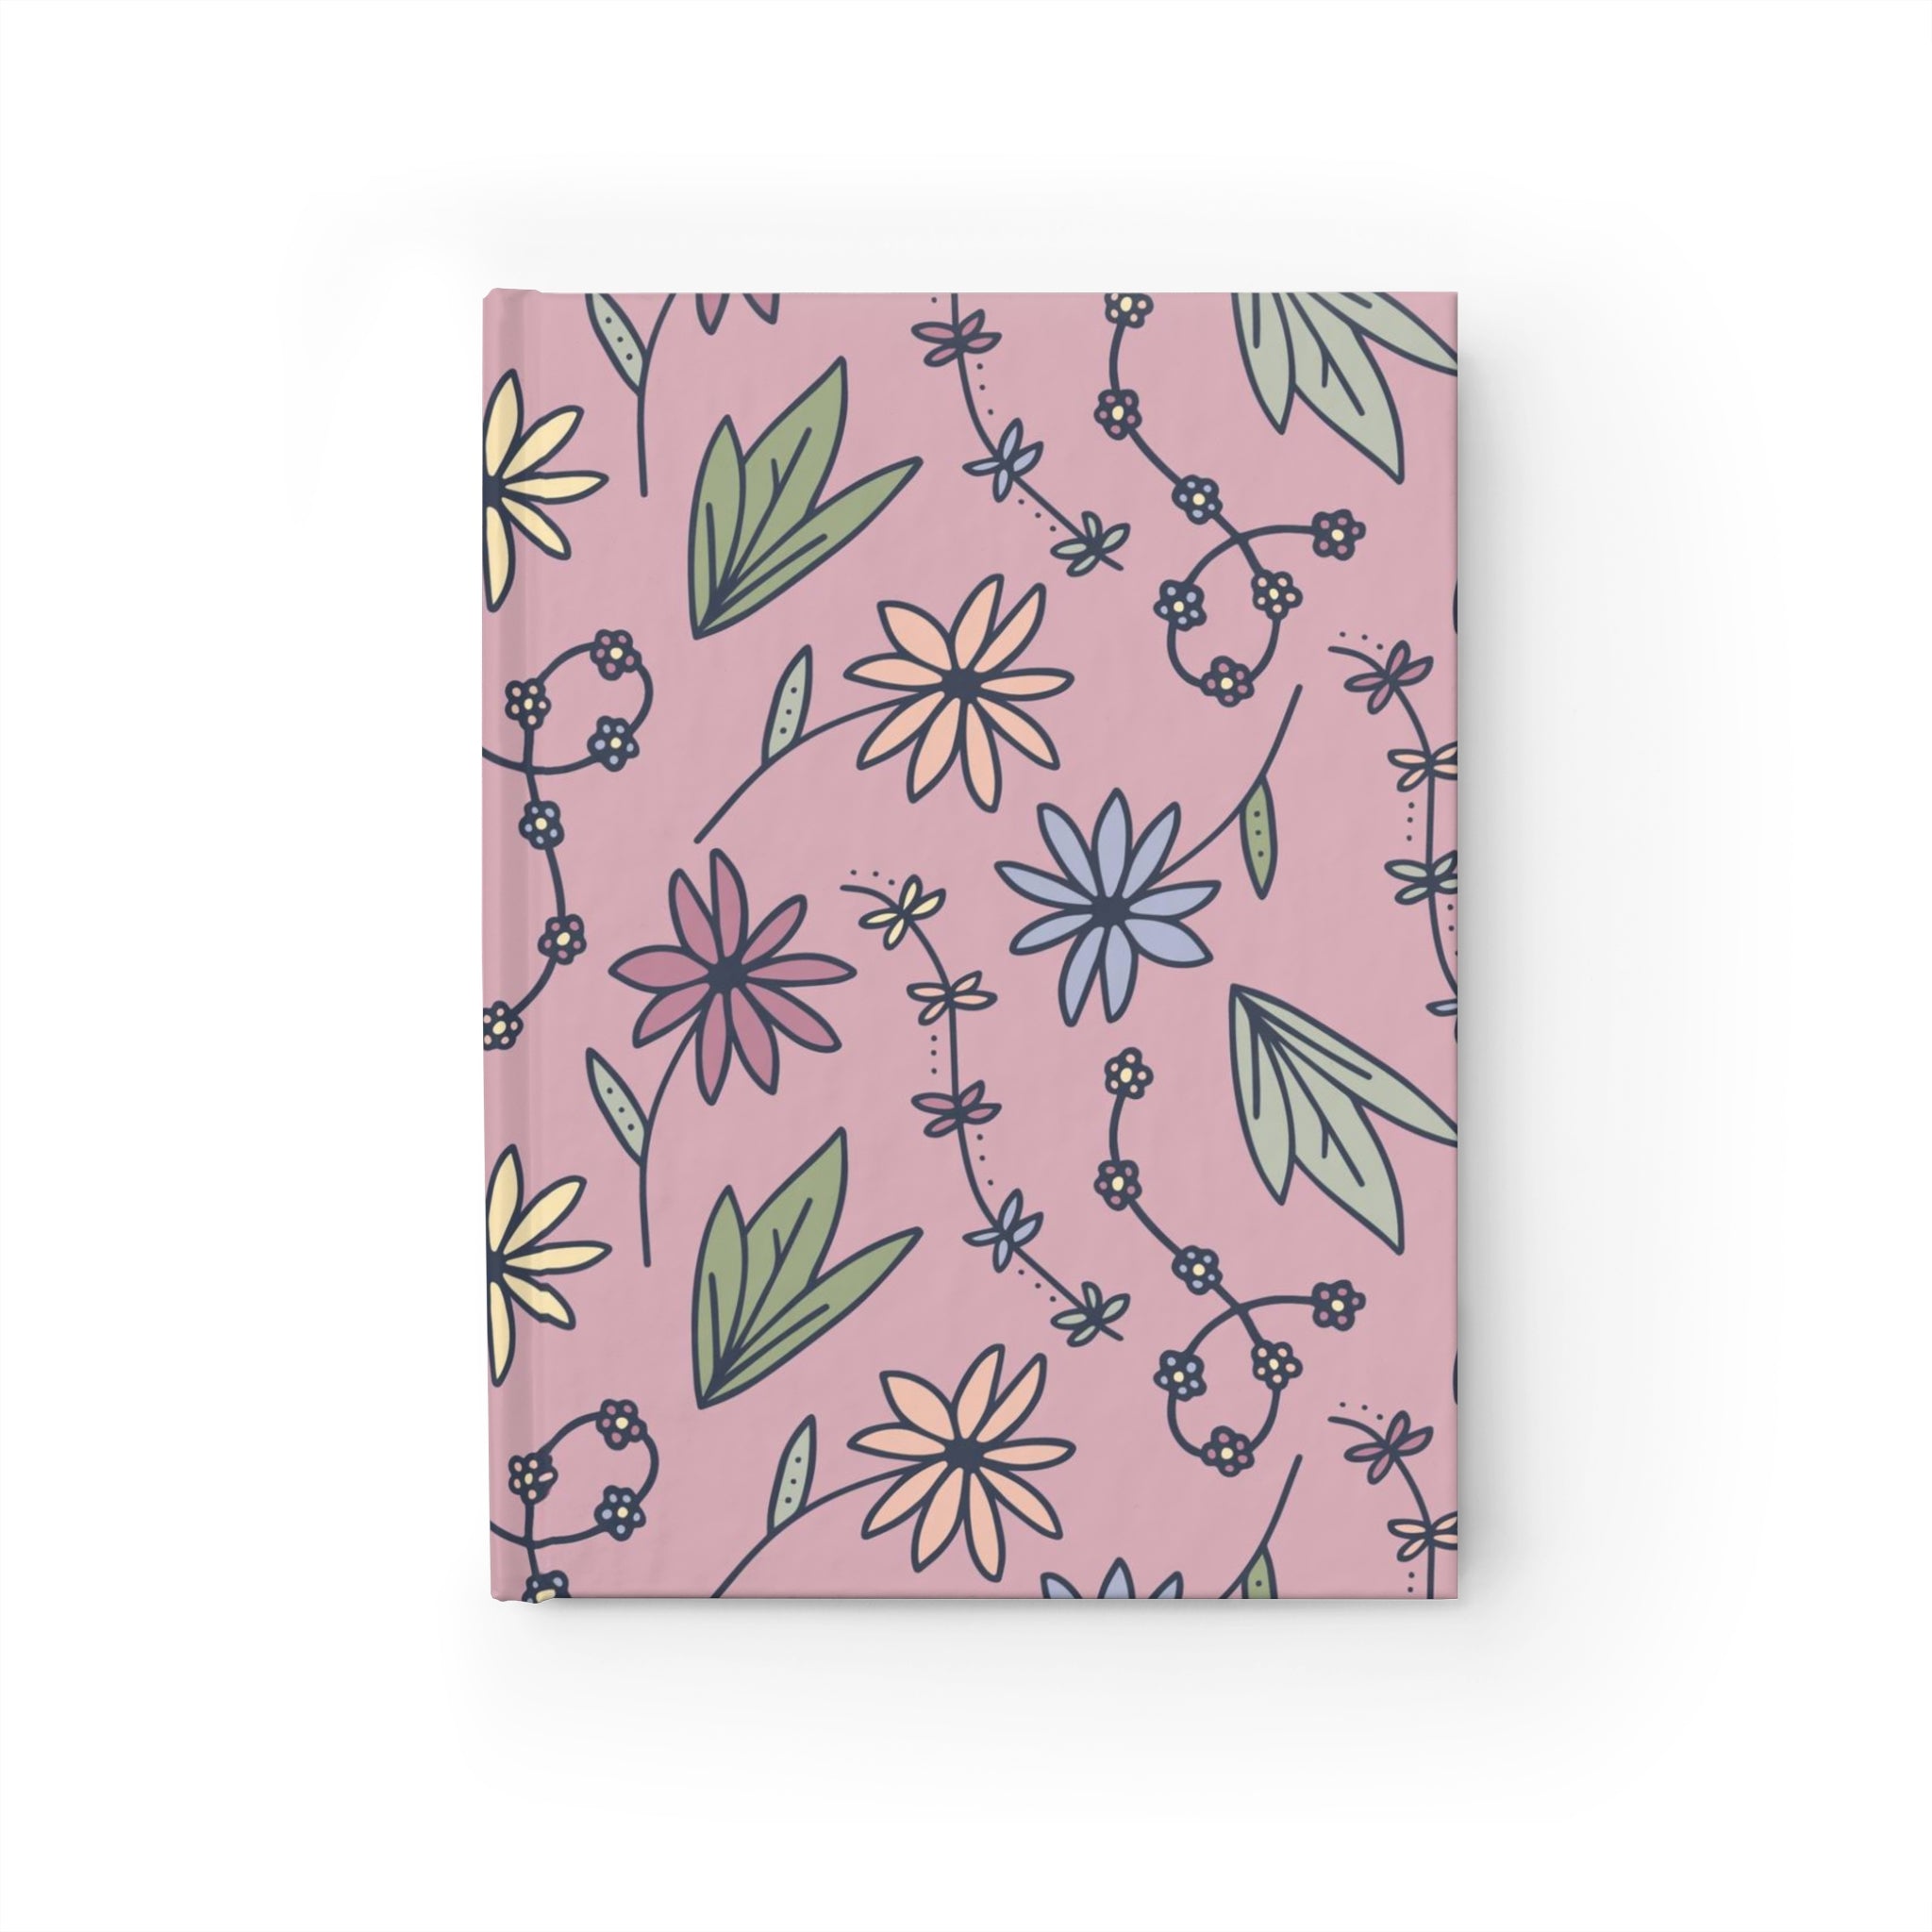 cute notebooks